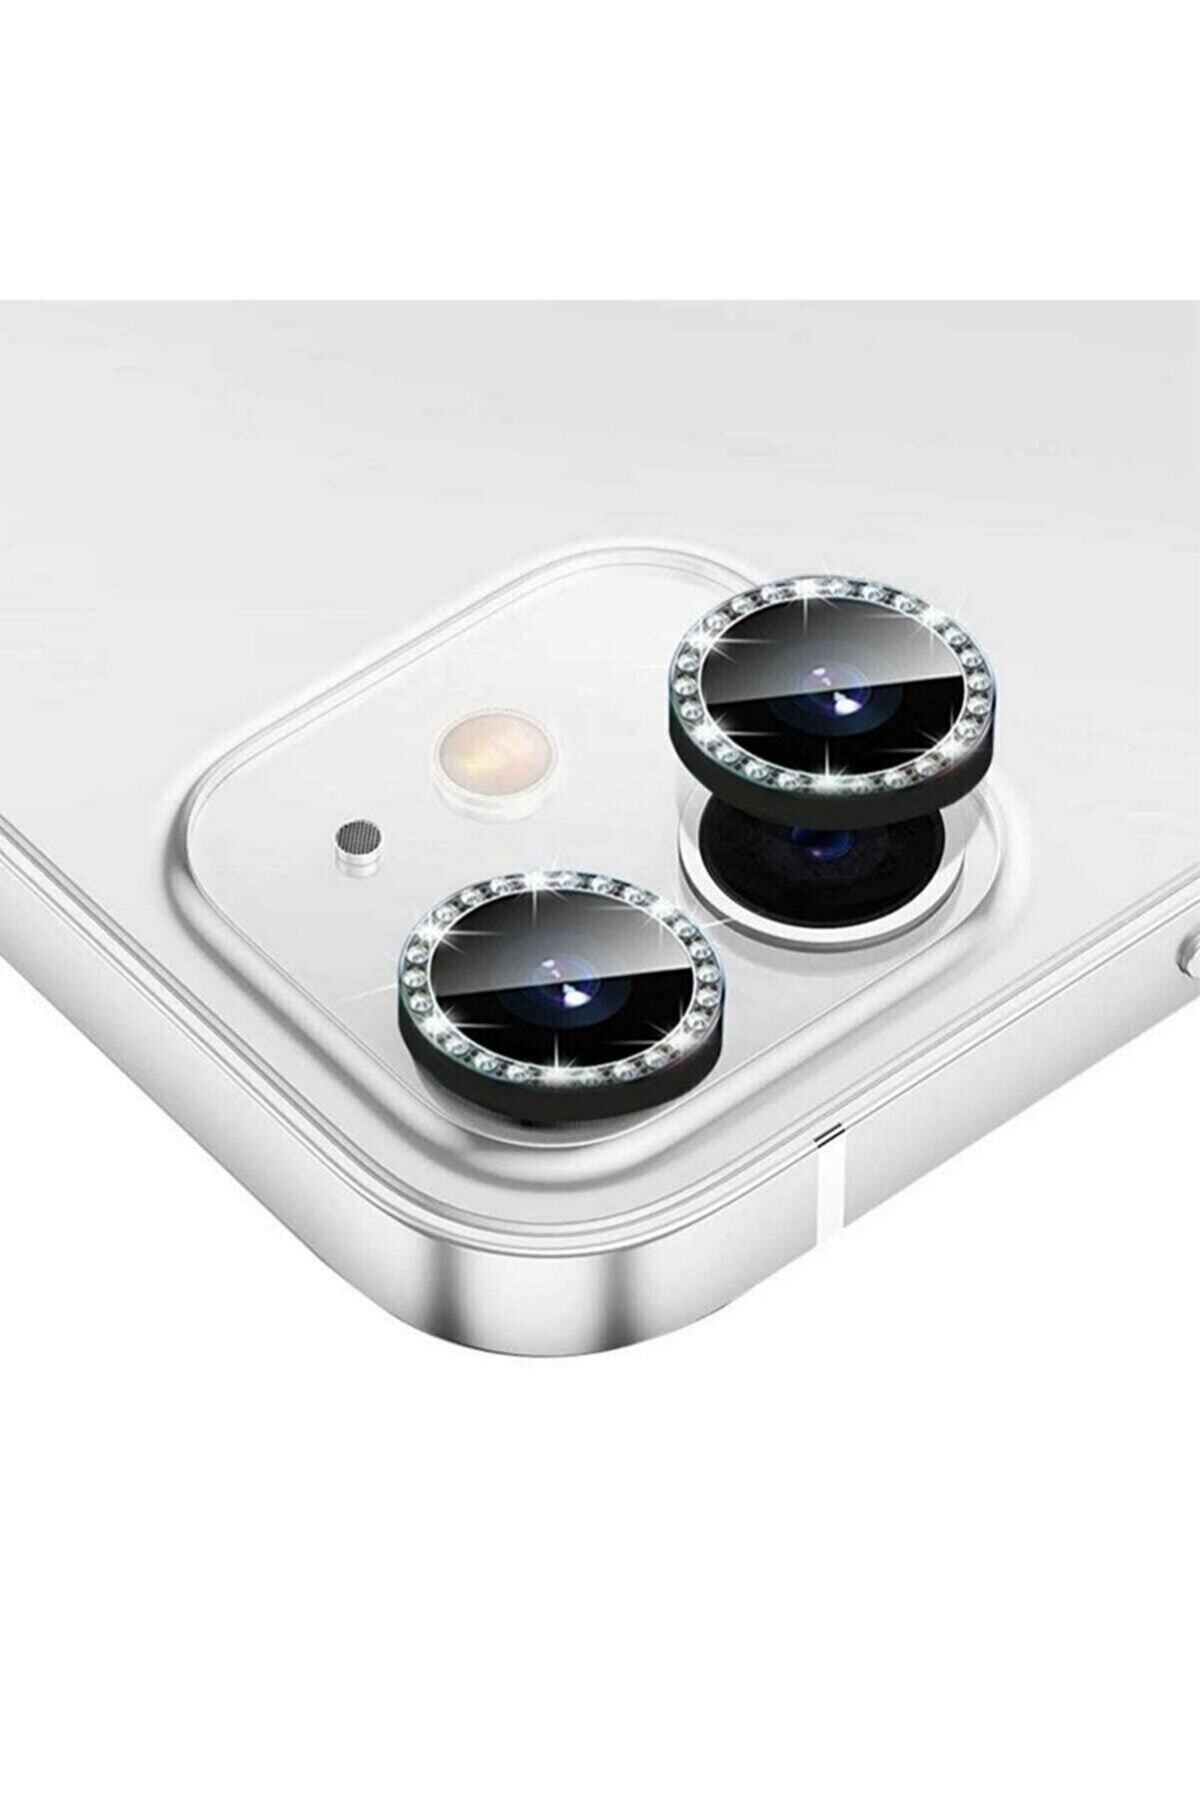 KVK PRİVACY Iphone 11 / Iphone 12 /iphone 12 Mini Uyumlu Siyah Swarovski Taşlı Kamera Lensi Koruyucu